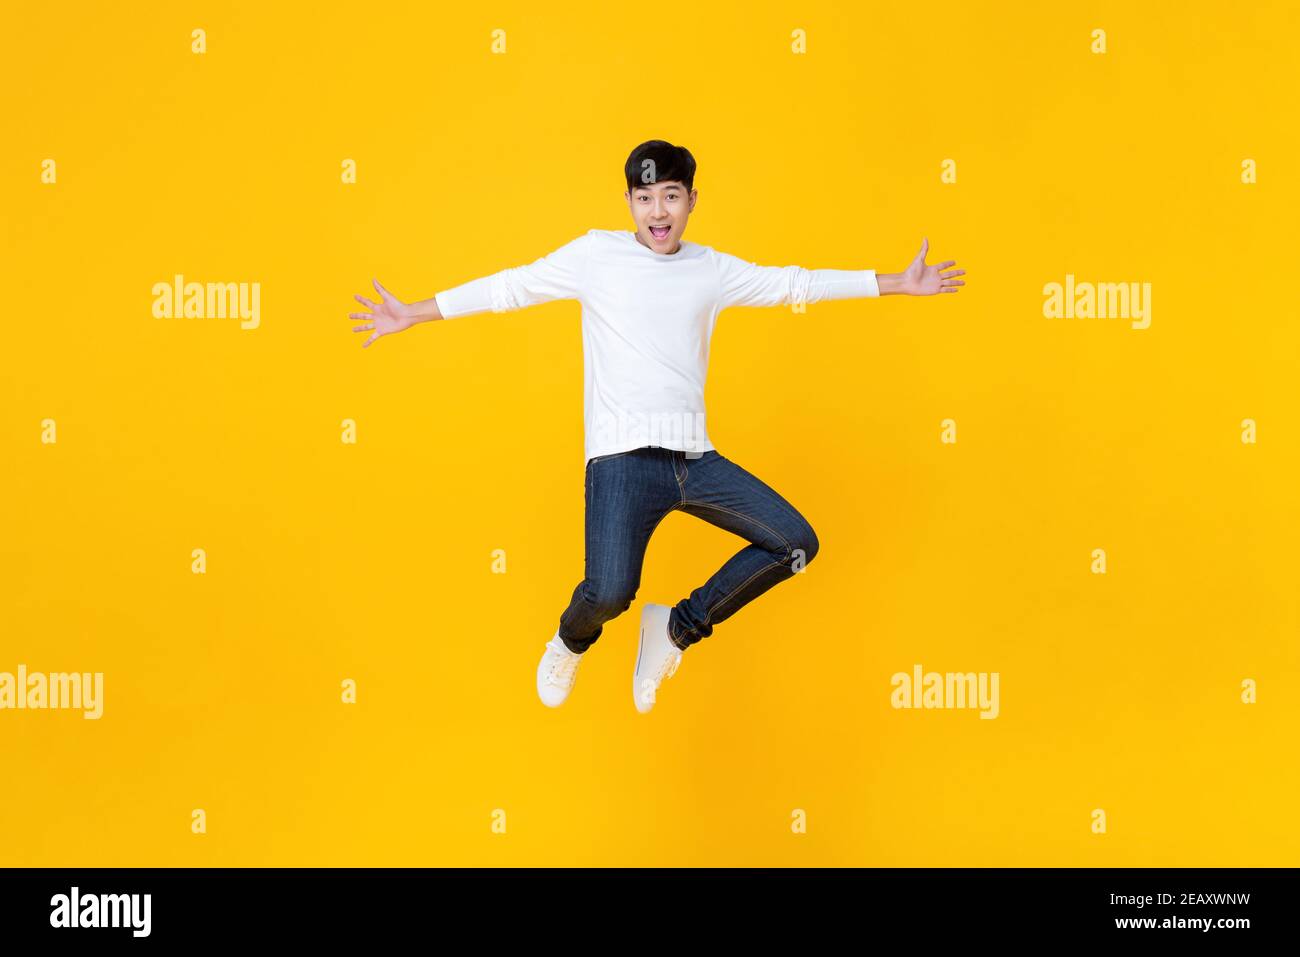 Energetisch glücklich lächelnd junge asiatische Mann in lässigen Kleidung springen Mit ausgestreckten Händen Studioaufnahme isoliert in bunten gelben Hintergrund Stockfoto